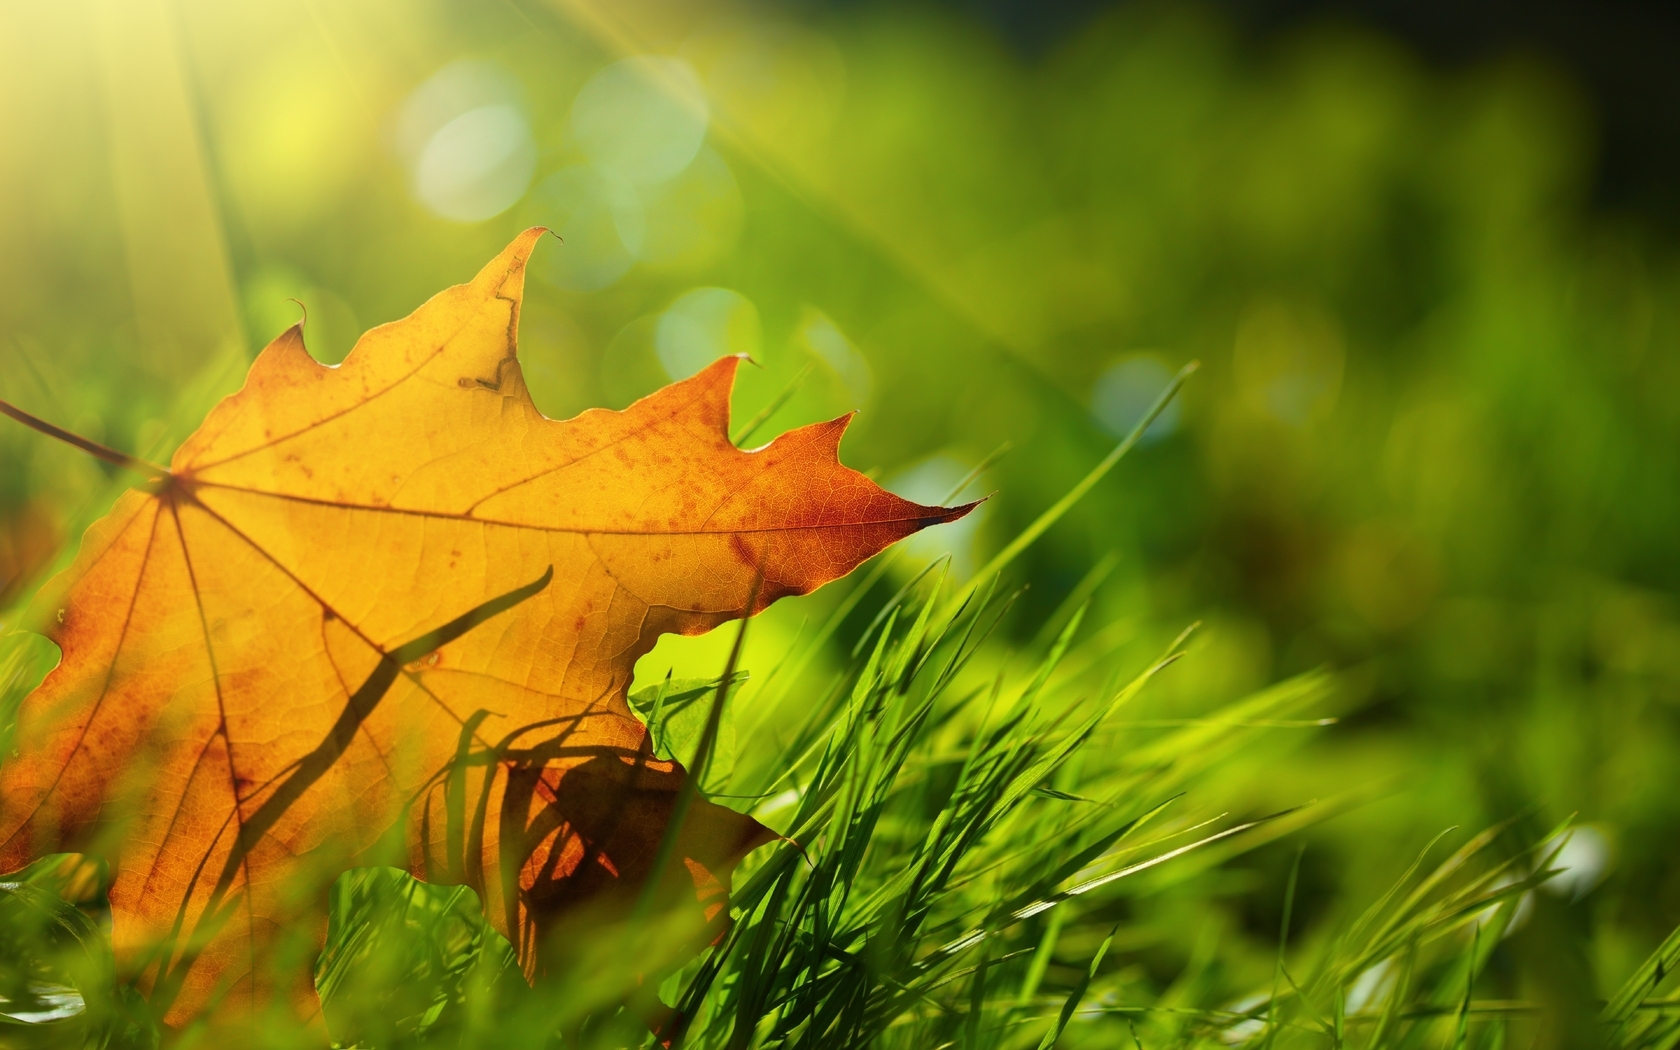 Картинка: Лист, жёлтый, осень, трава